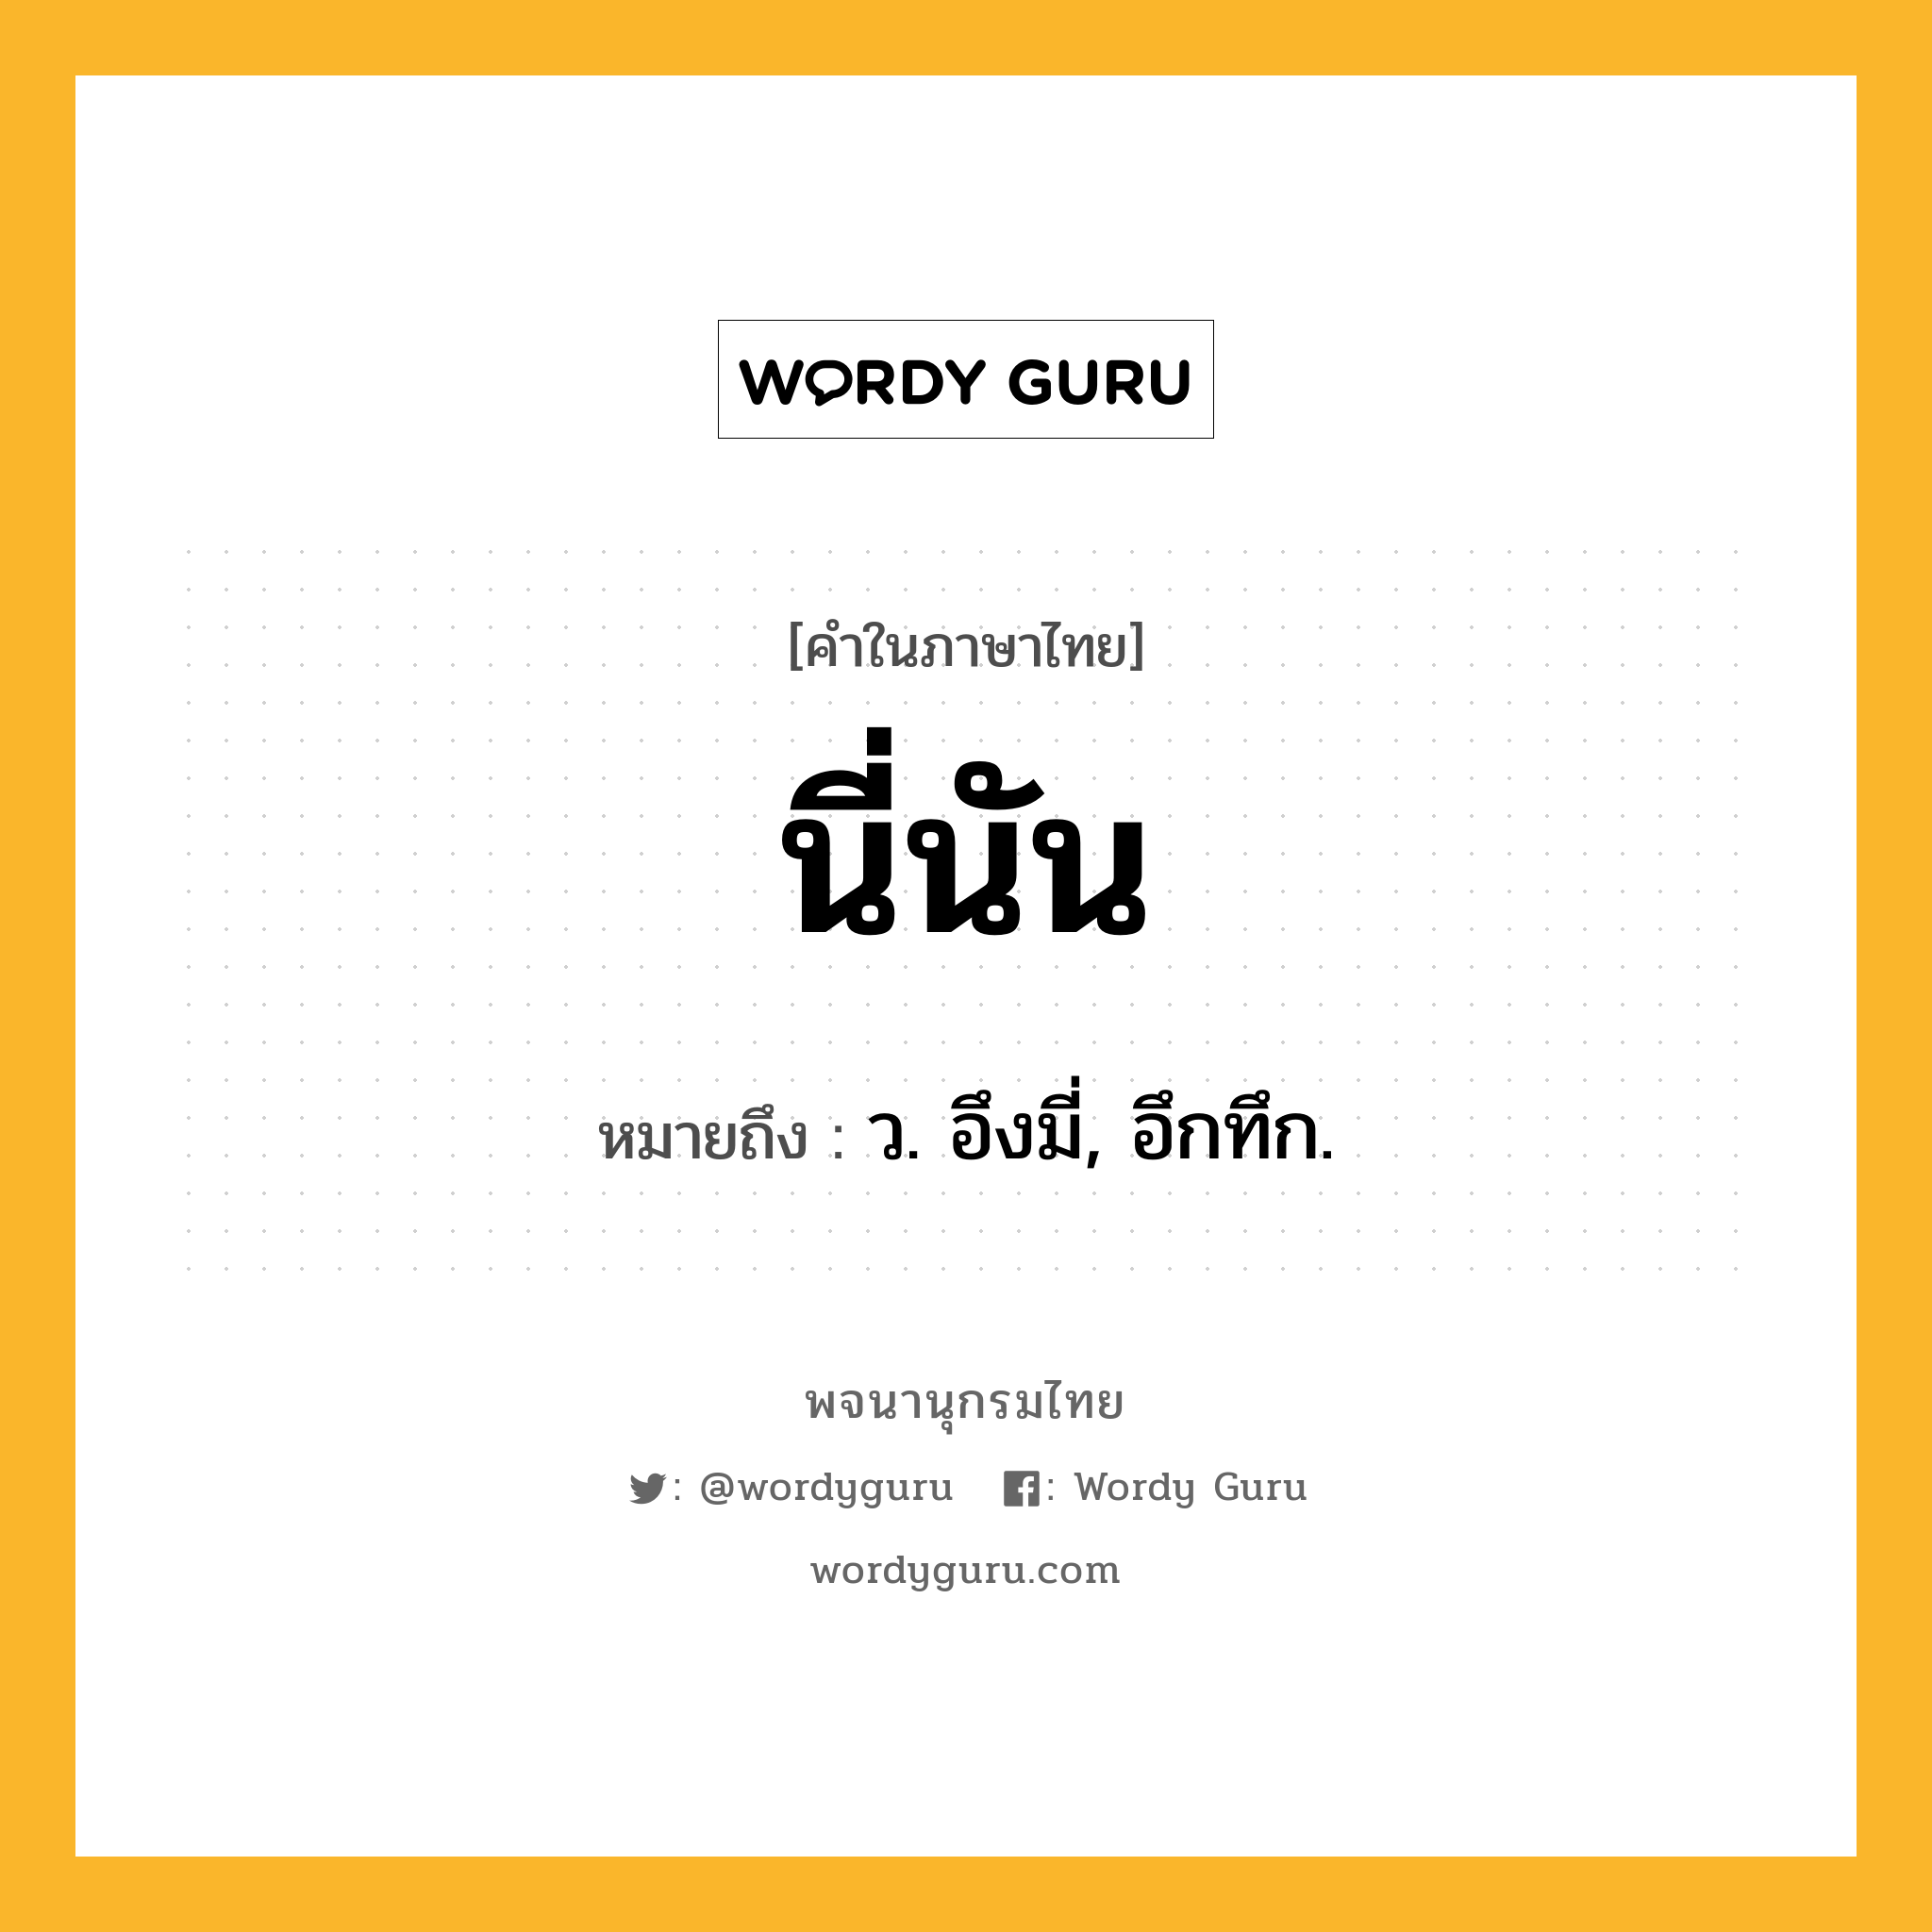 นี่นัน หมายถึงอะไร?, คำในภาษาไทย นี่นัน หมายถึง ว. อึงมี่, อึกทึก.